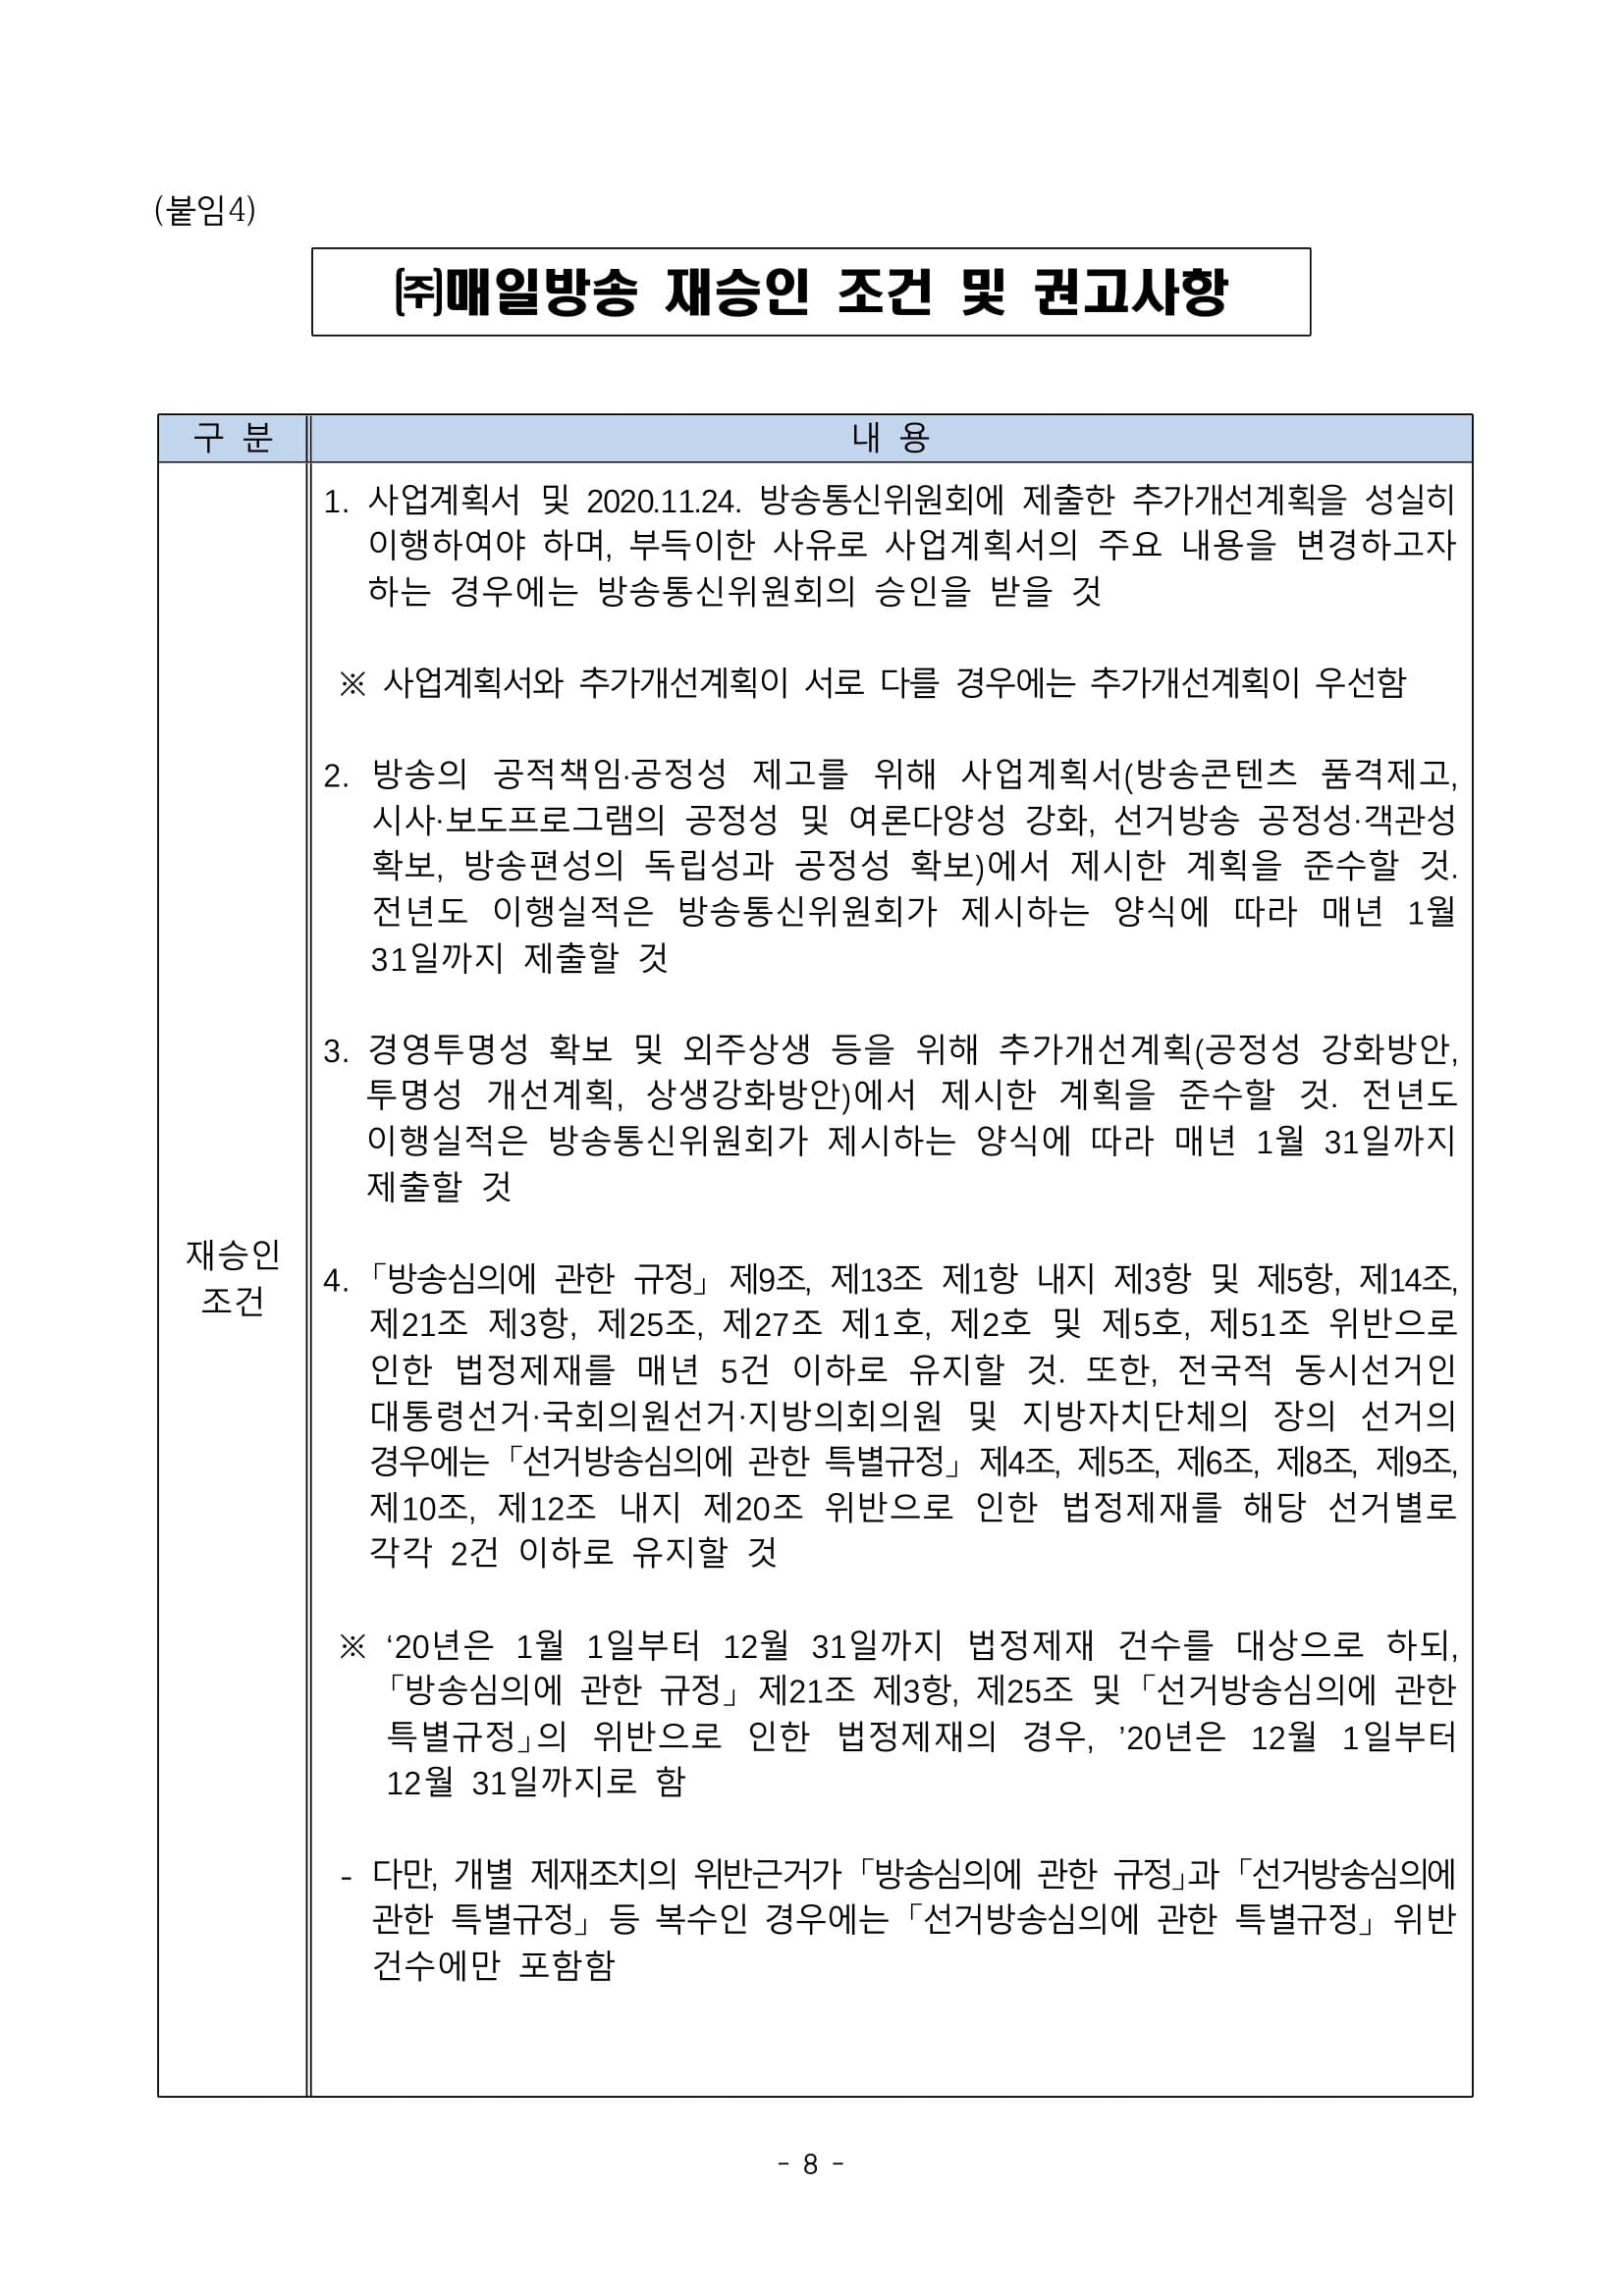 방송통신위원회(위원장 한상혁, 이하 ‘방통위’라 함)는 2020년 11월 27일(금) 14_0008.jpg